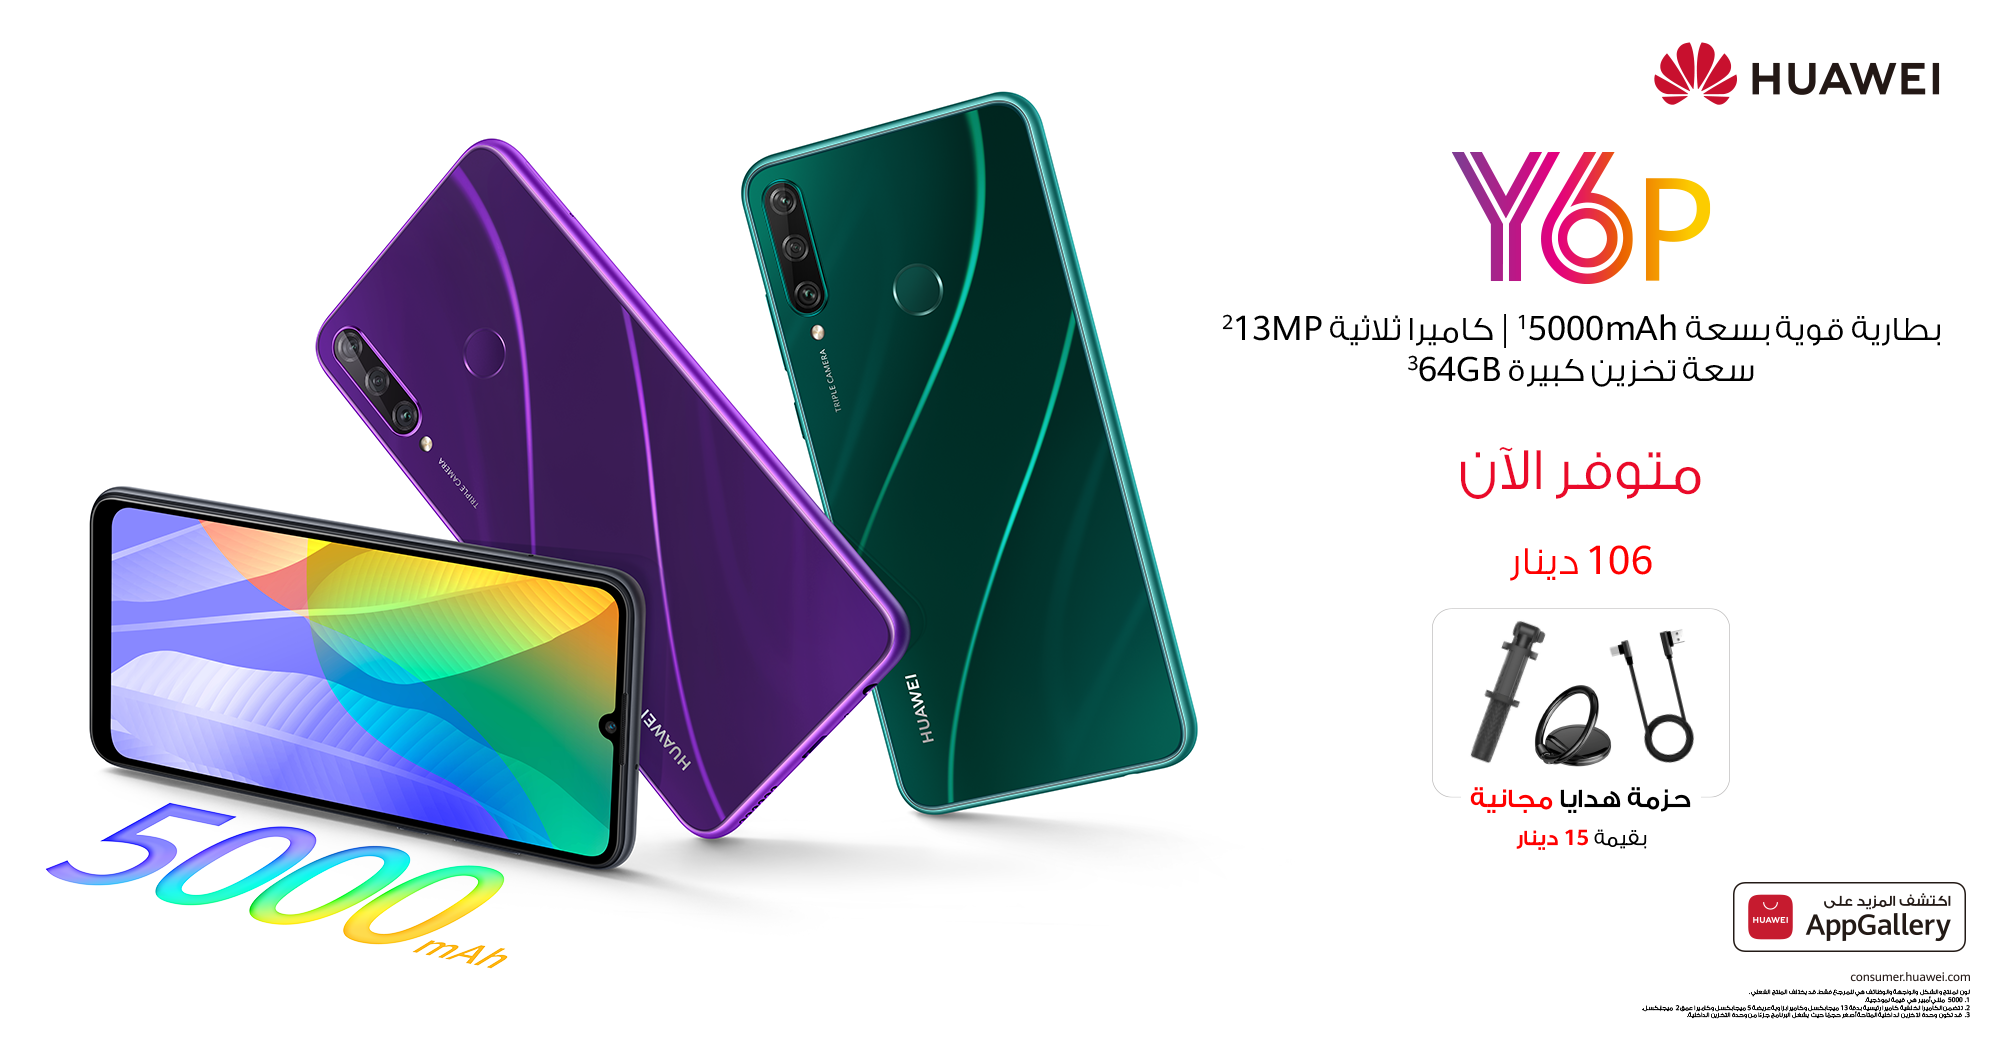 Huawei Y6p متوفر الآن في السوق الأردني هاتف من الفئة الابتدائية ببطارية  تدوم طويلاً سعة 5000 ميللي أمبير - جريدة الغد